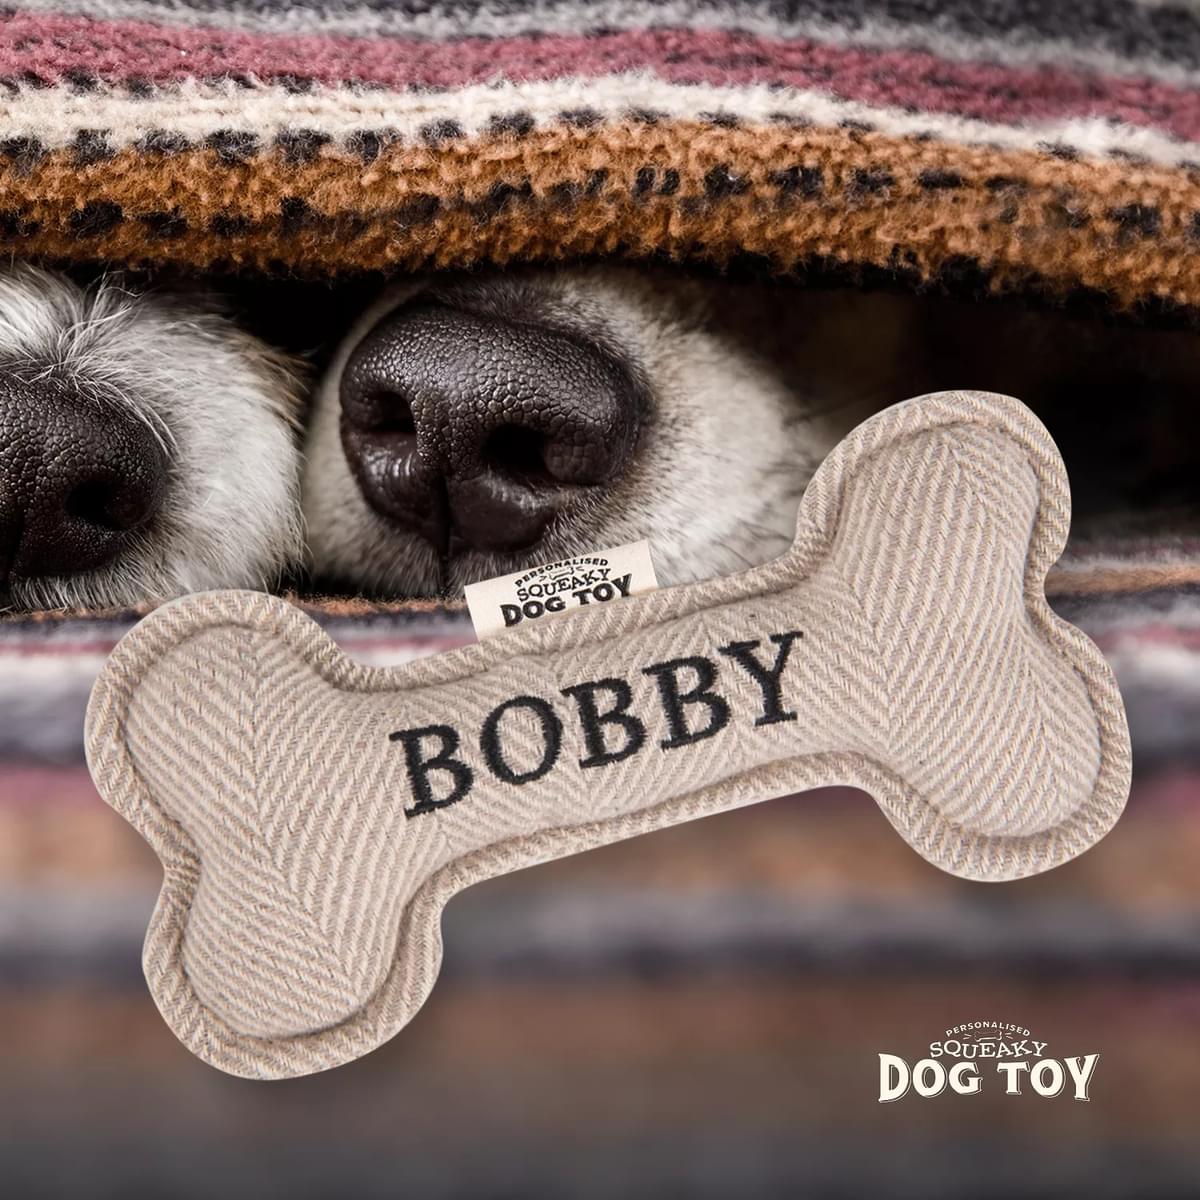 Named Squeaky Dog Toy- Bobby. Bone shaped herringbone tweed pattern dog toy. 